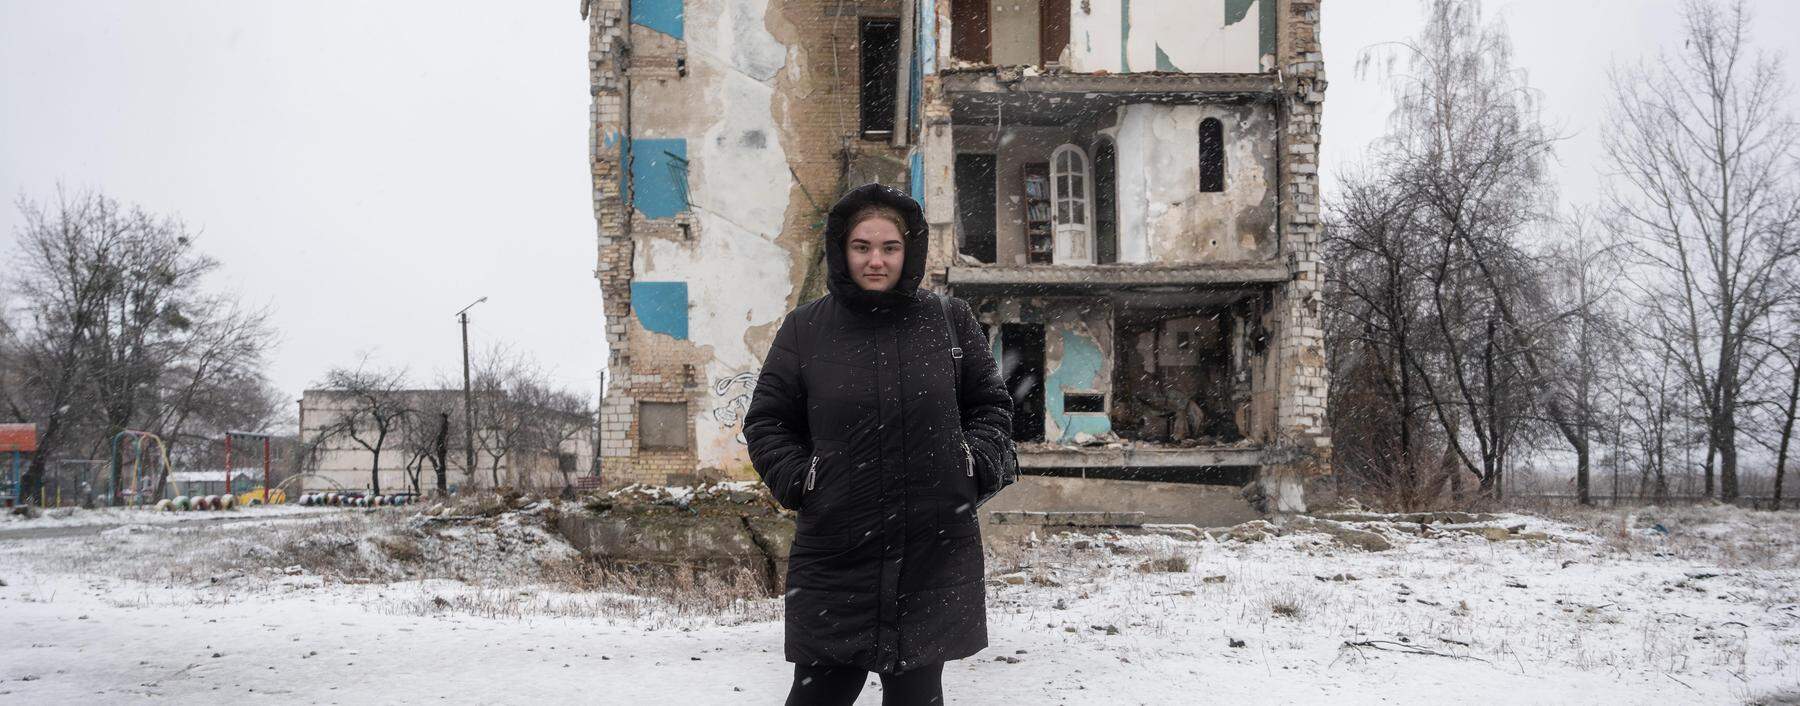 Die 16-jährige Bohdana vor dem teilzerstörten Wohnhaus, in dem sie mit ihrer Großmutter lebt.